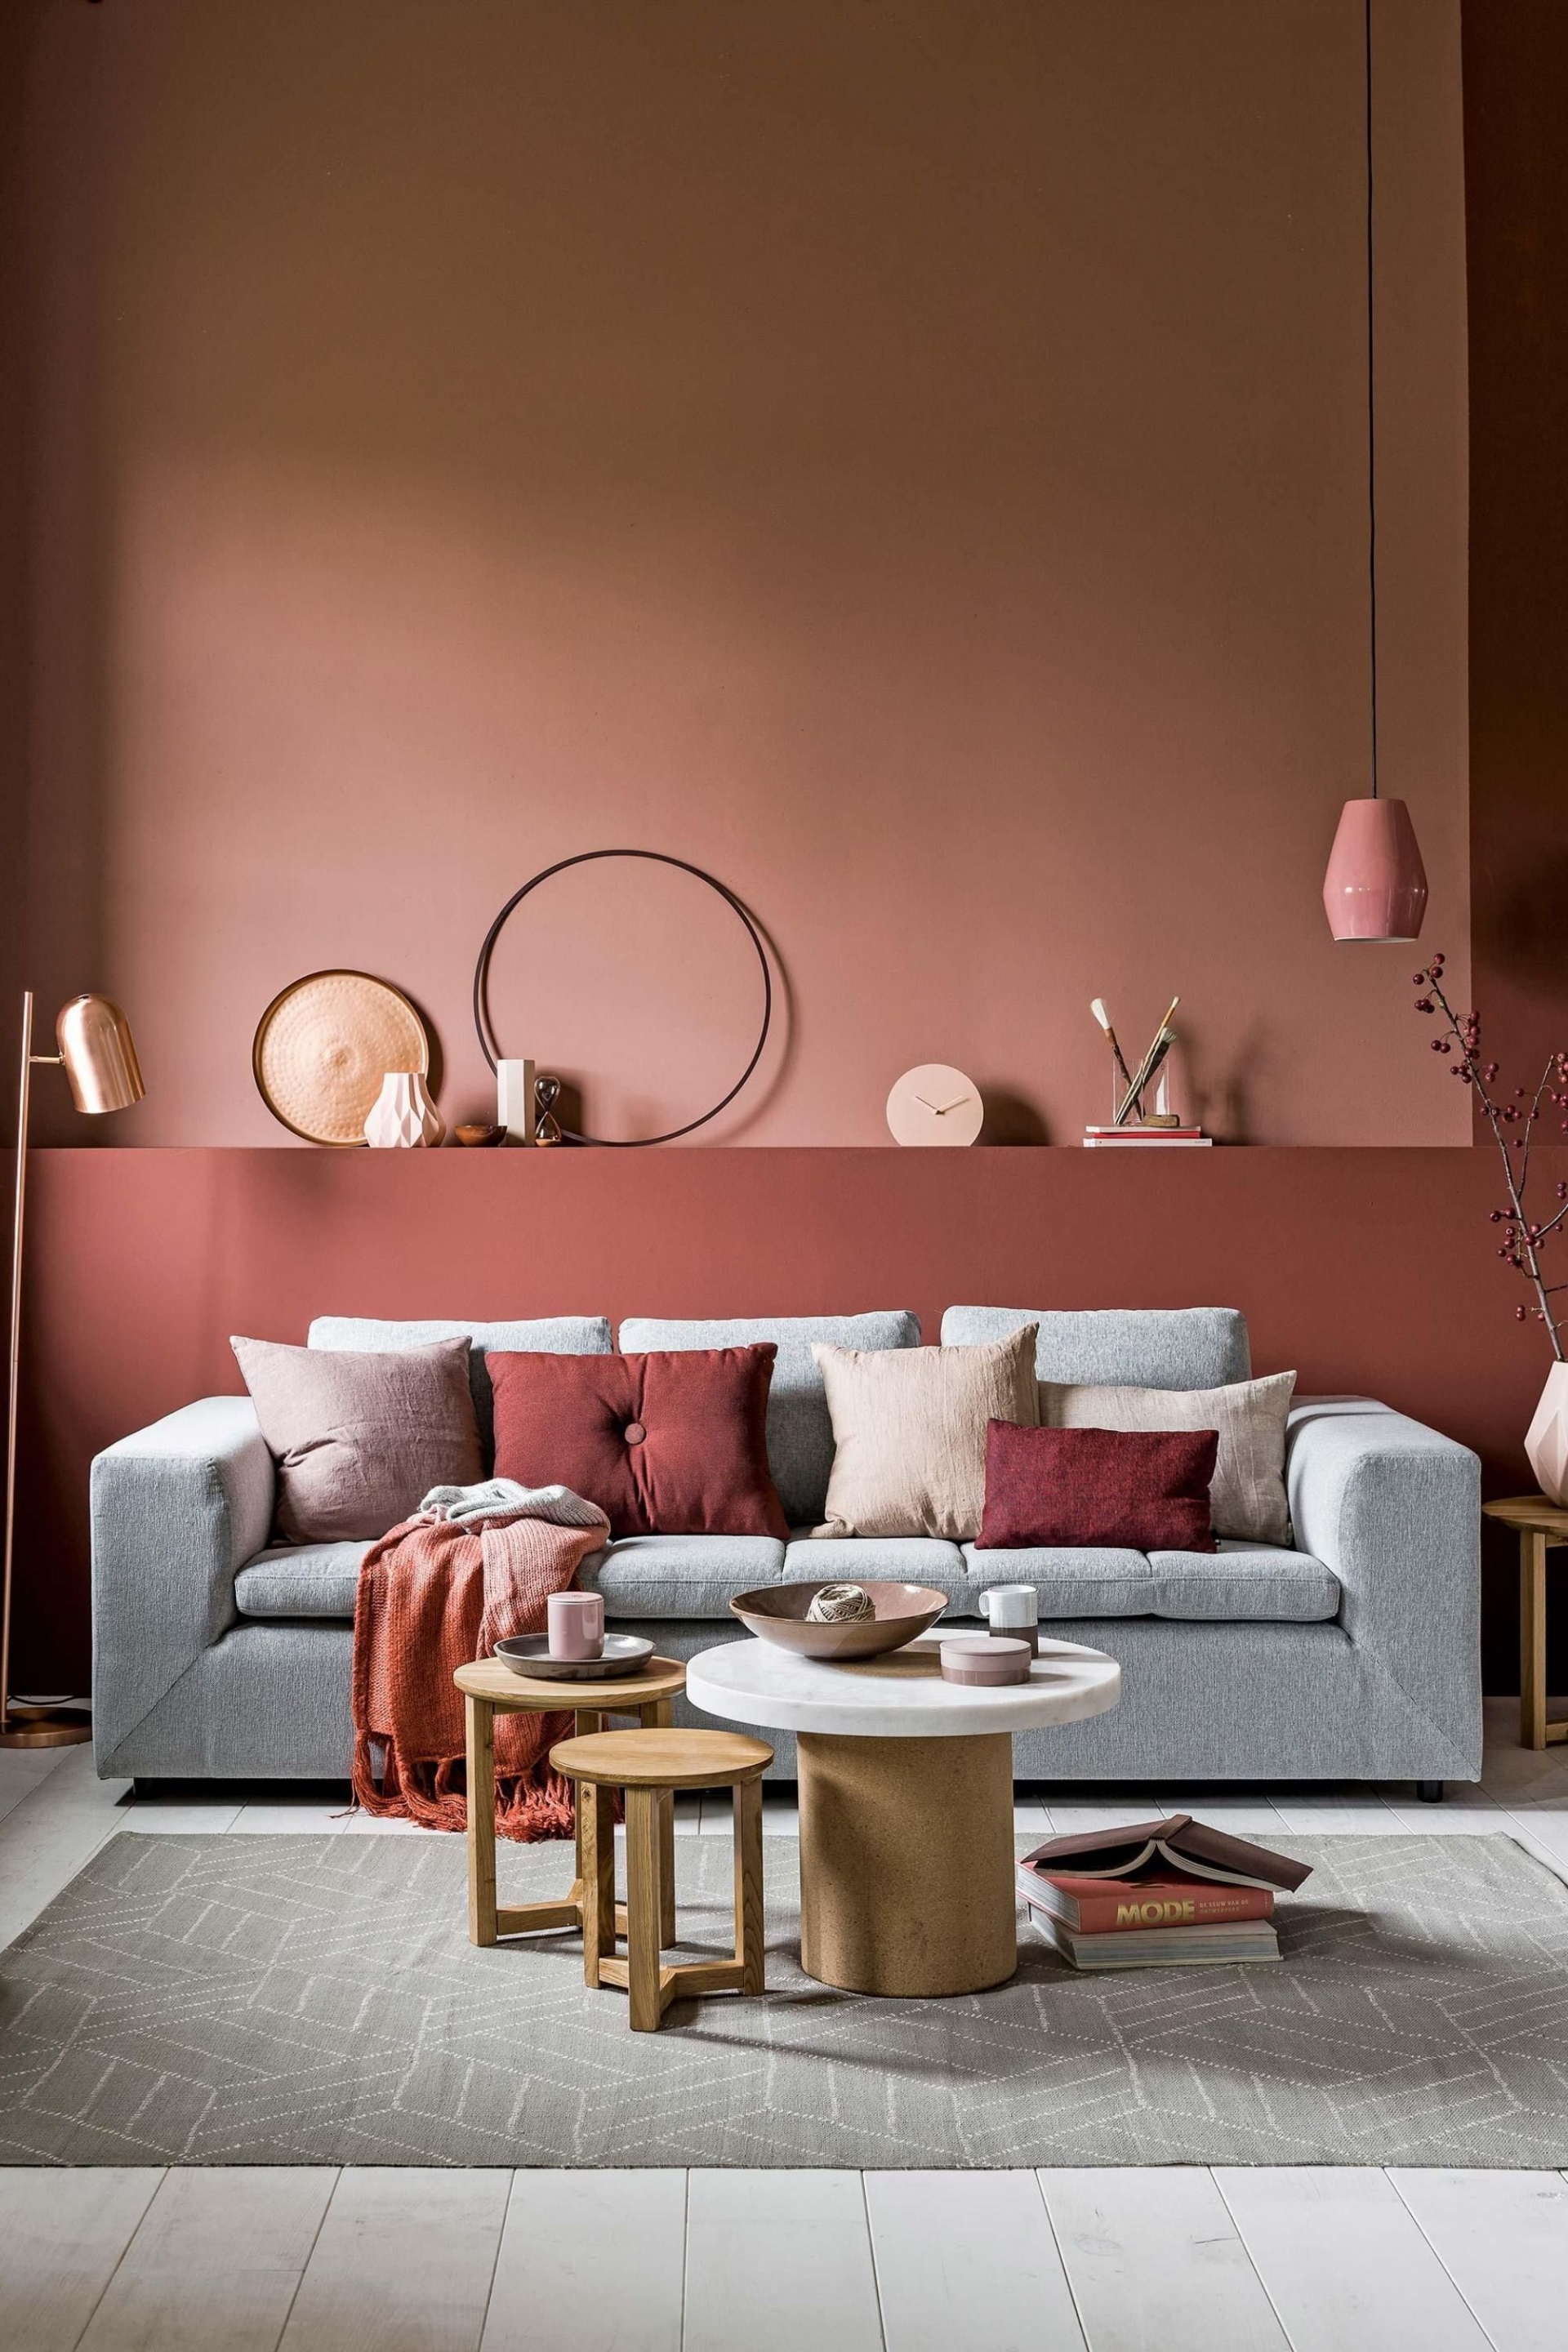 Phòng khách mùa Thu ấm áp với bức tường sơn màu hồng và đỏ tía. Ghế sofa và thảm trải sàn màu xám tương phản nhẹ nhàng, kết hợp với đèn thả trần, lọ hoa, gối ôm và những món đồ gốm sứ với sắc hồng xinh xinh trên bàn nước.